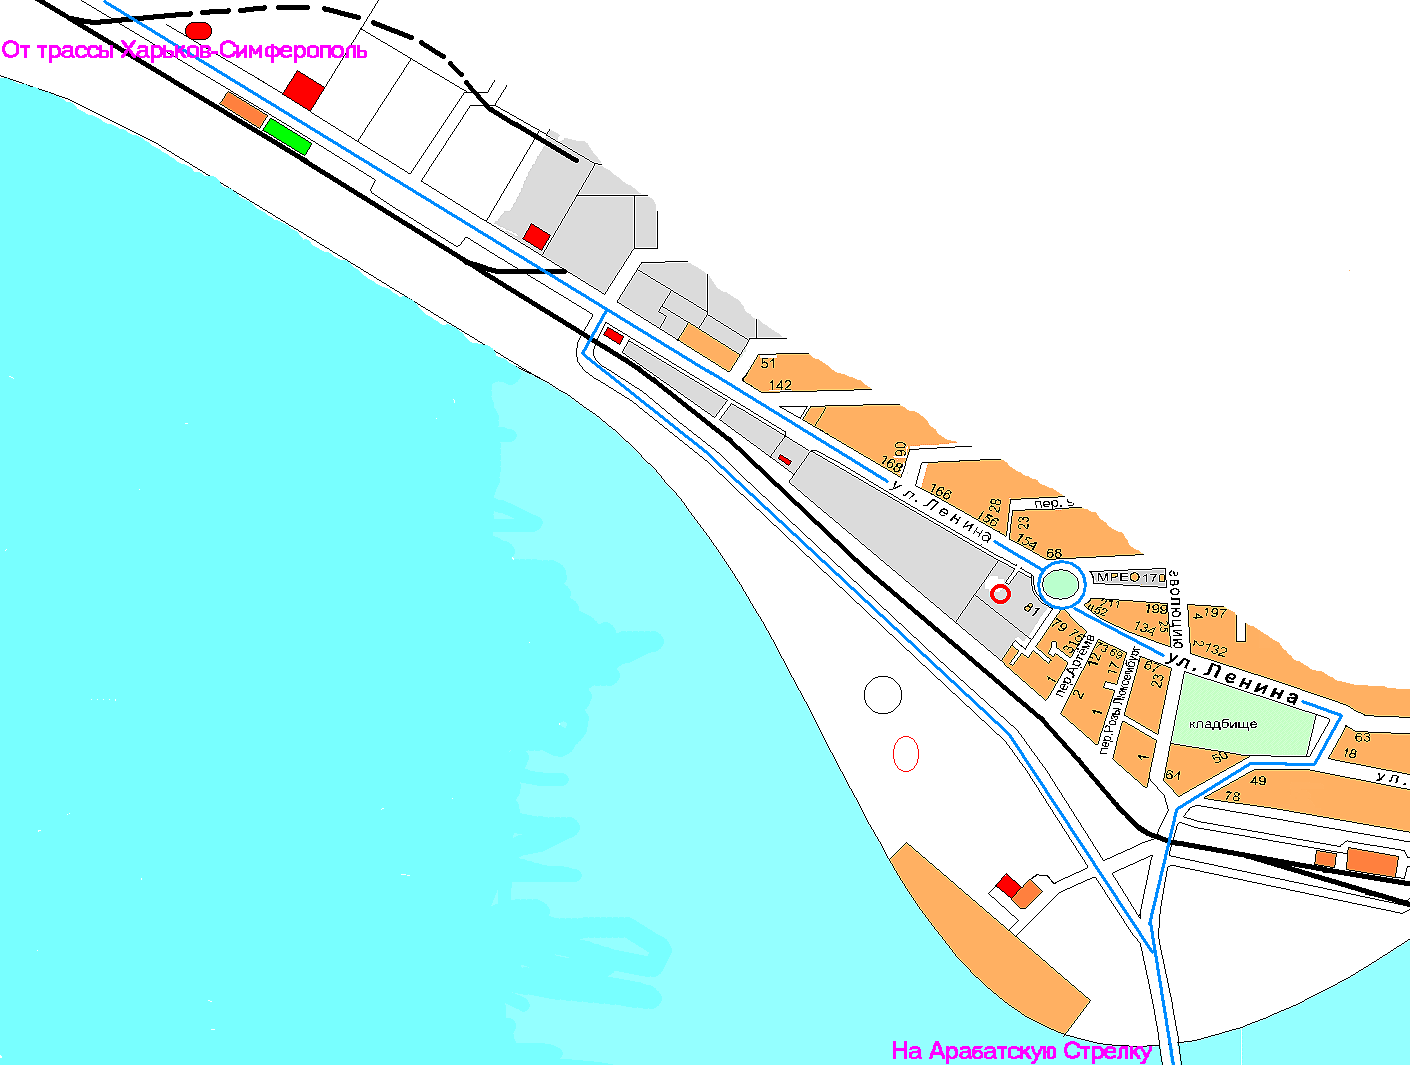 Схема проезда на стрелку через Геническ